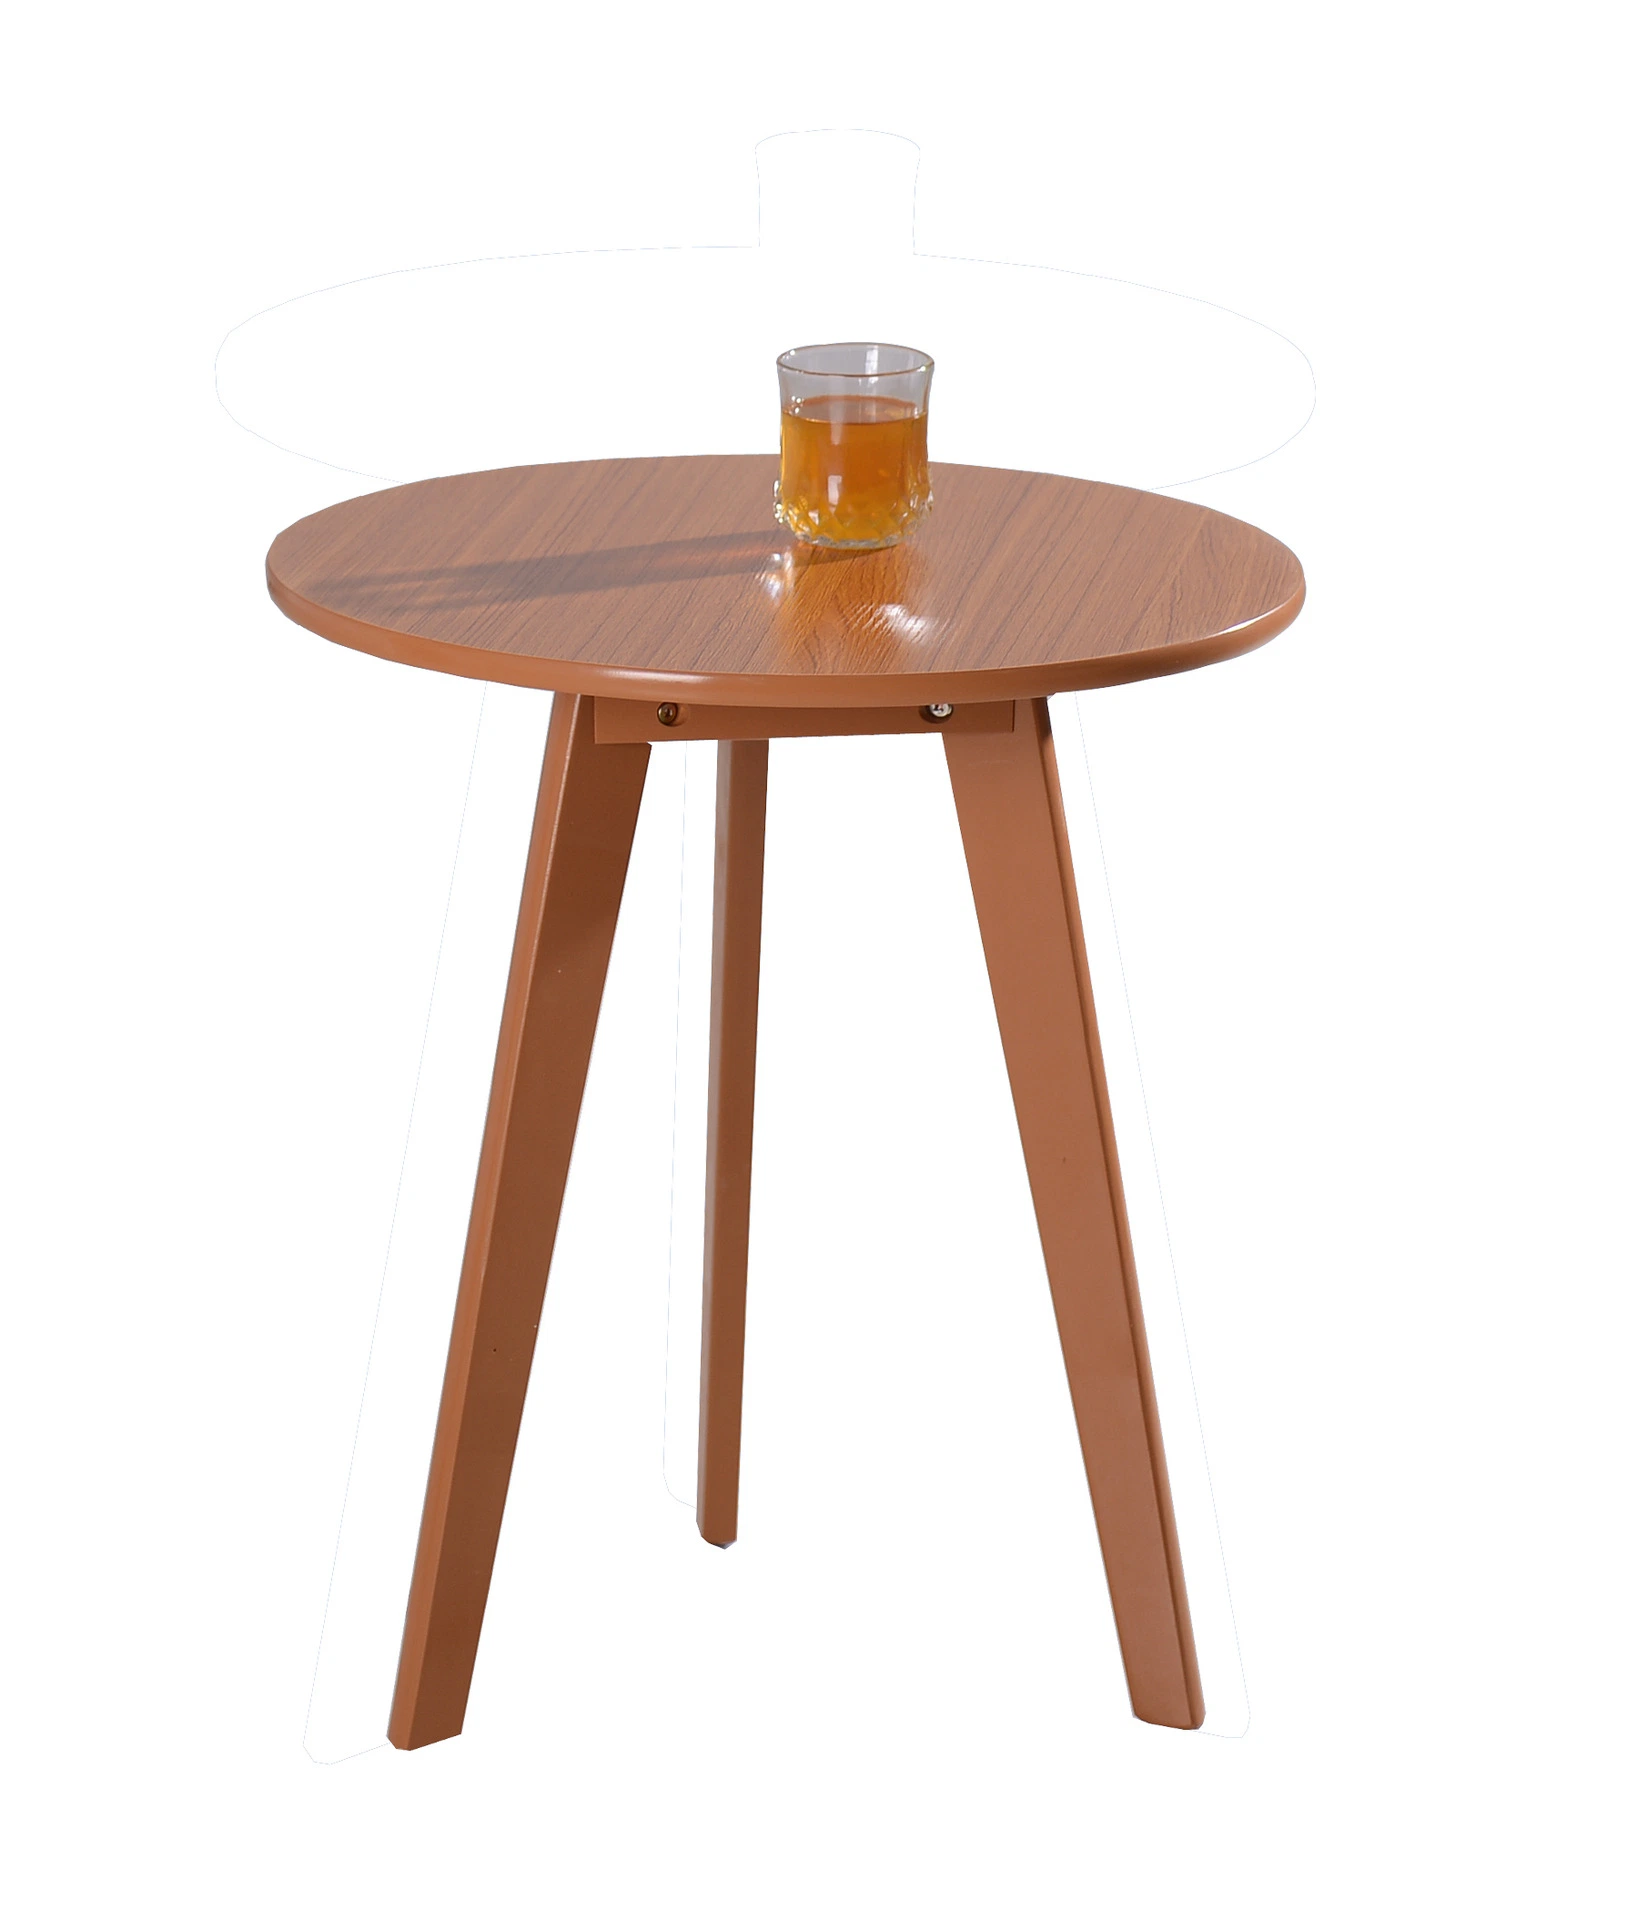 Чай в таблице диван простой таблице стул металлический моды мебель кофейный столик